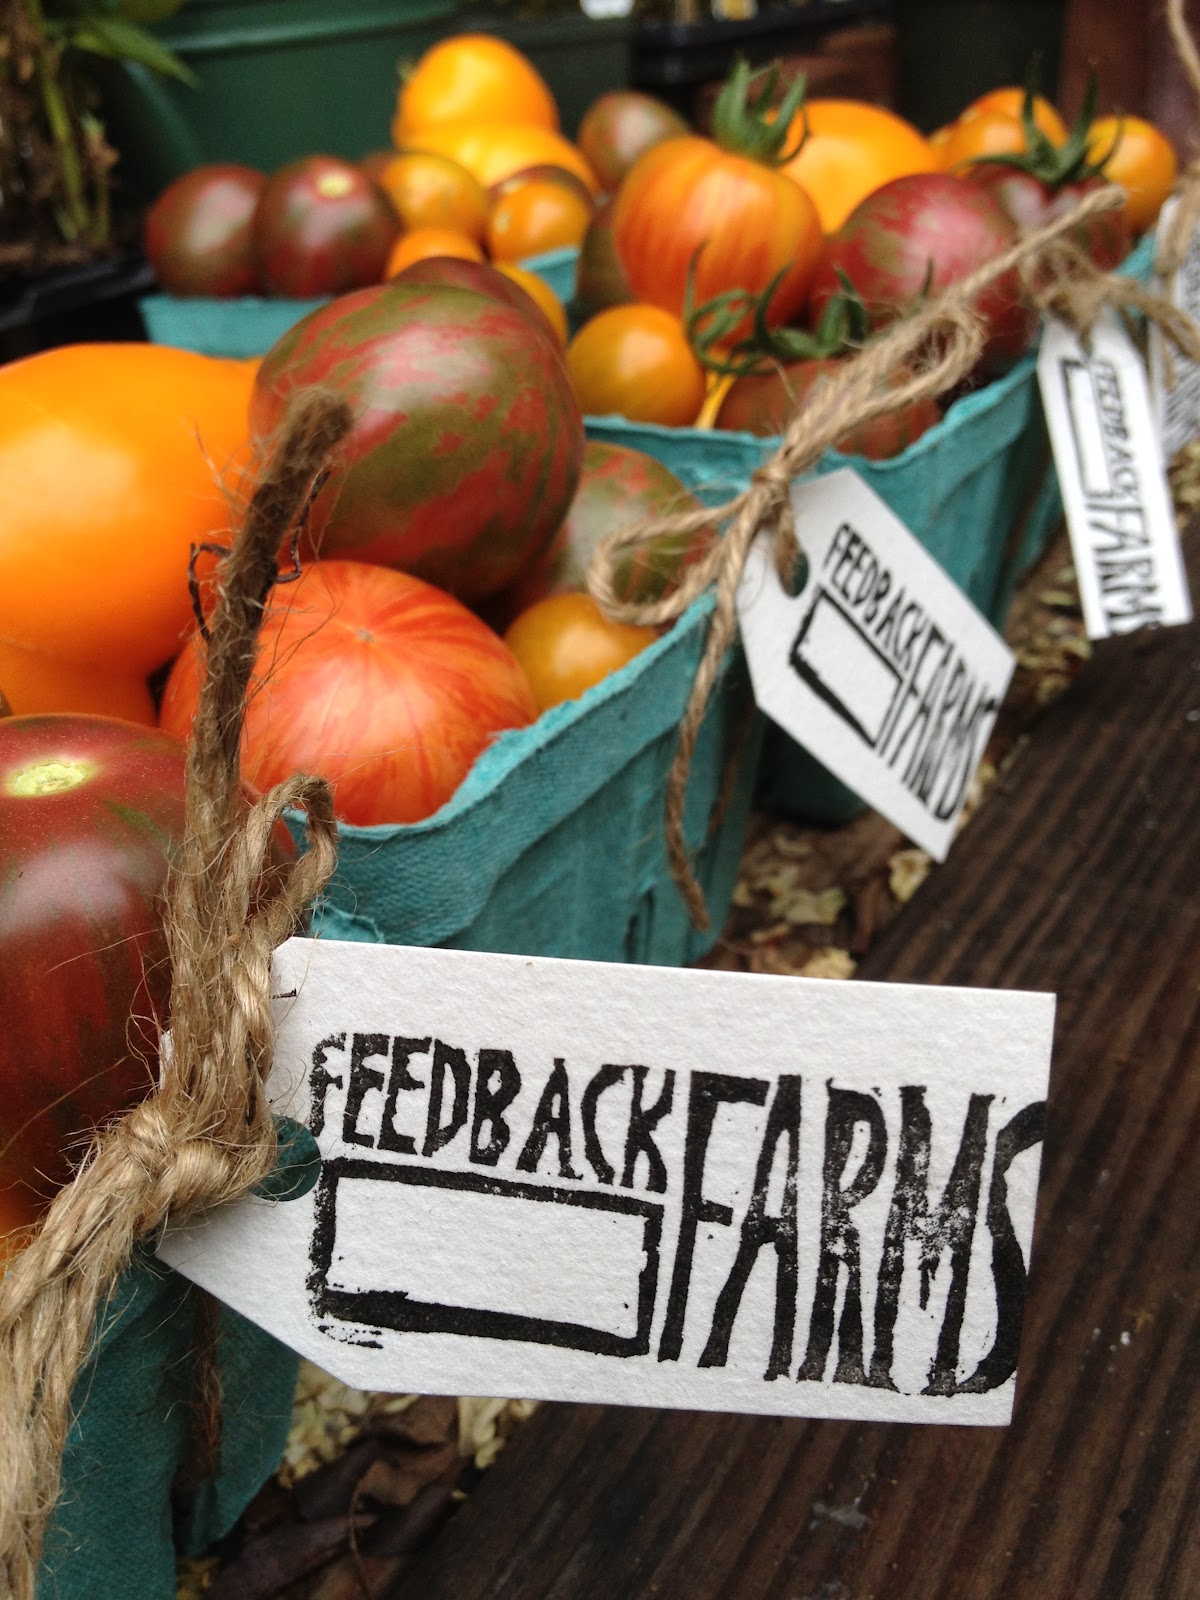 Featured Farmer: Feedback Farms